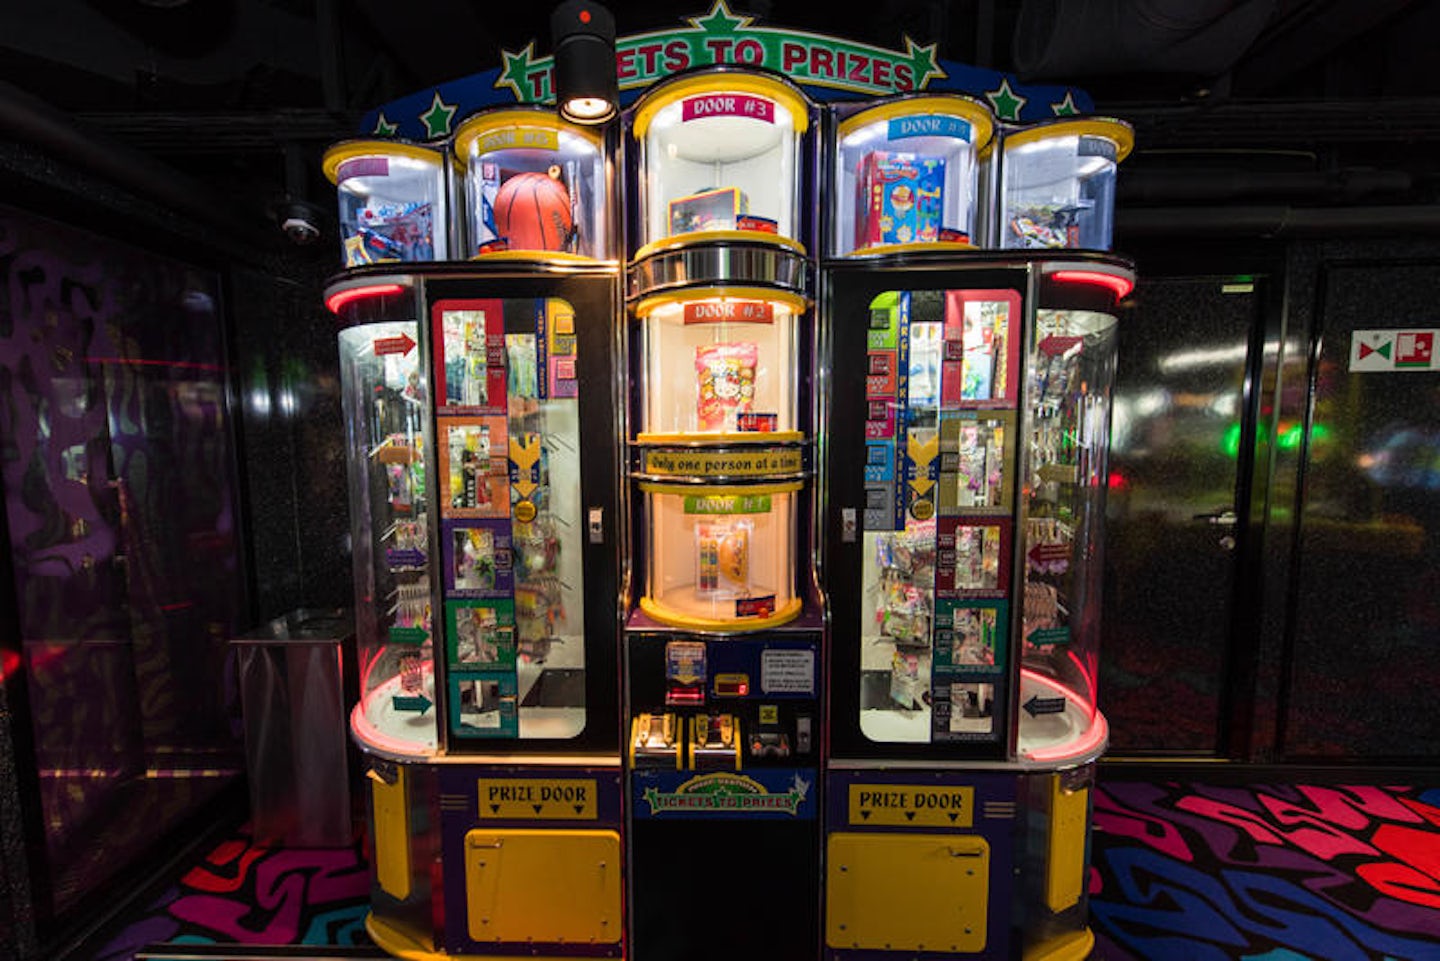 Video Arcade on Norwegian Breakaway